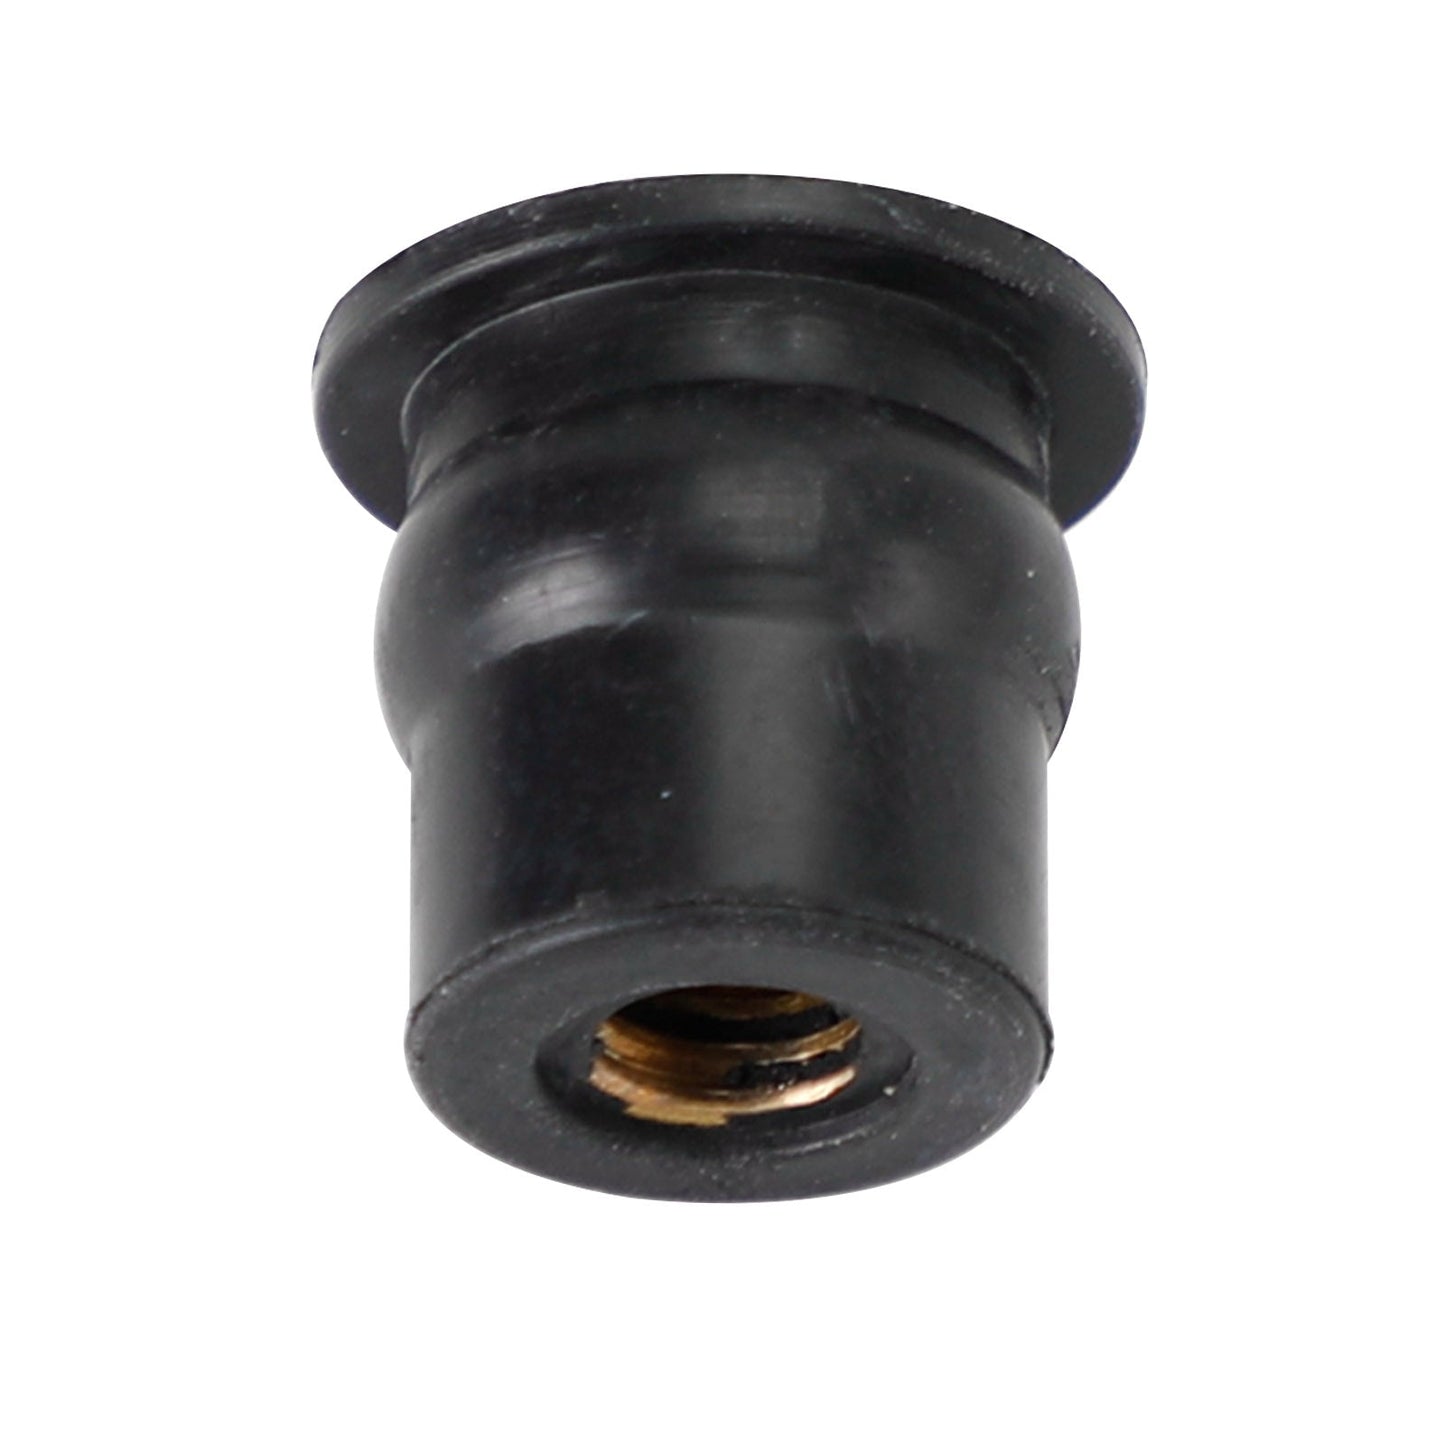 M6-Gummi-Wellnuts Wellnuts für Verkleidungs- und Bildschirmbefestigung, 100 Stück – 13 mm Loch